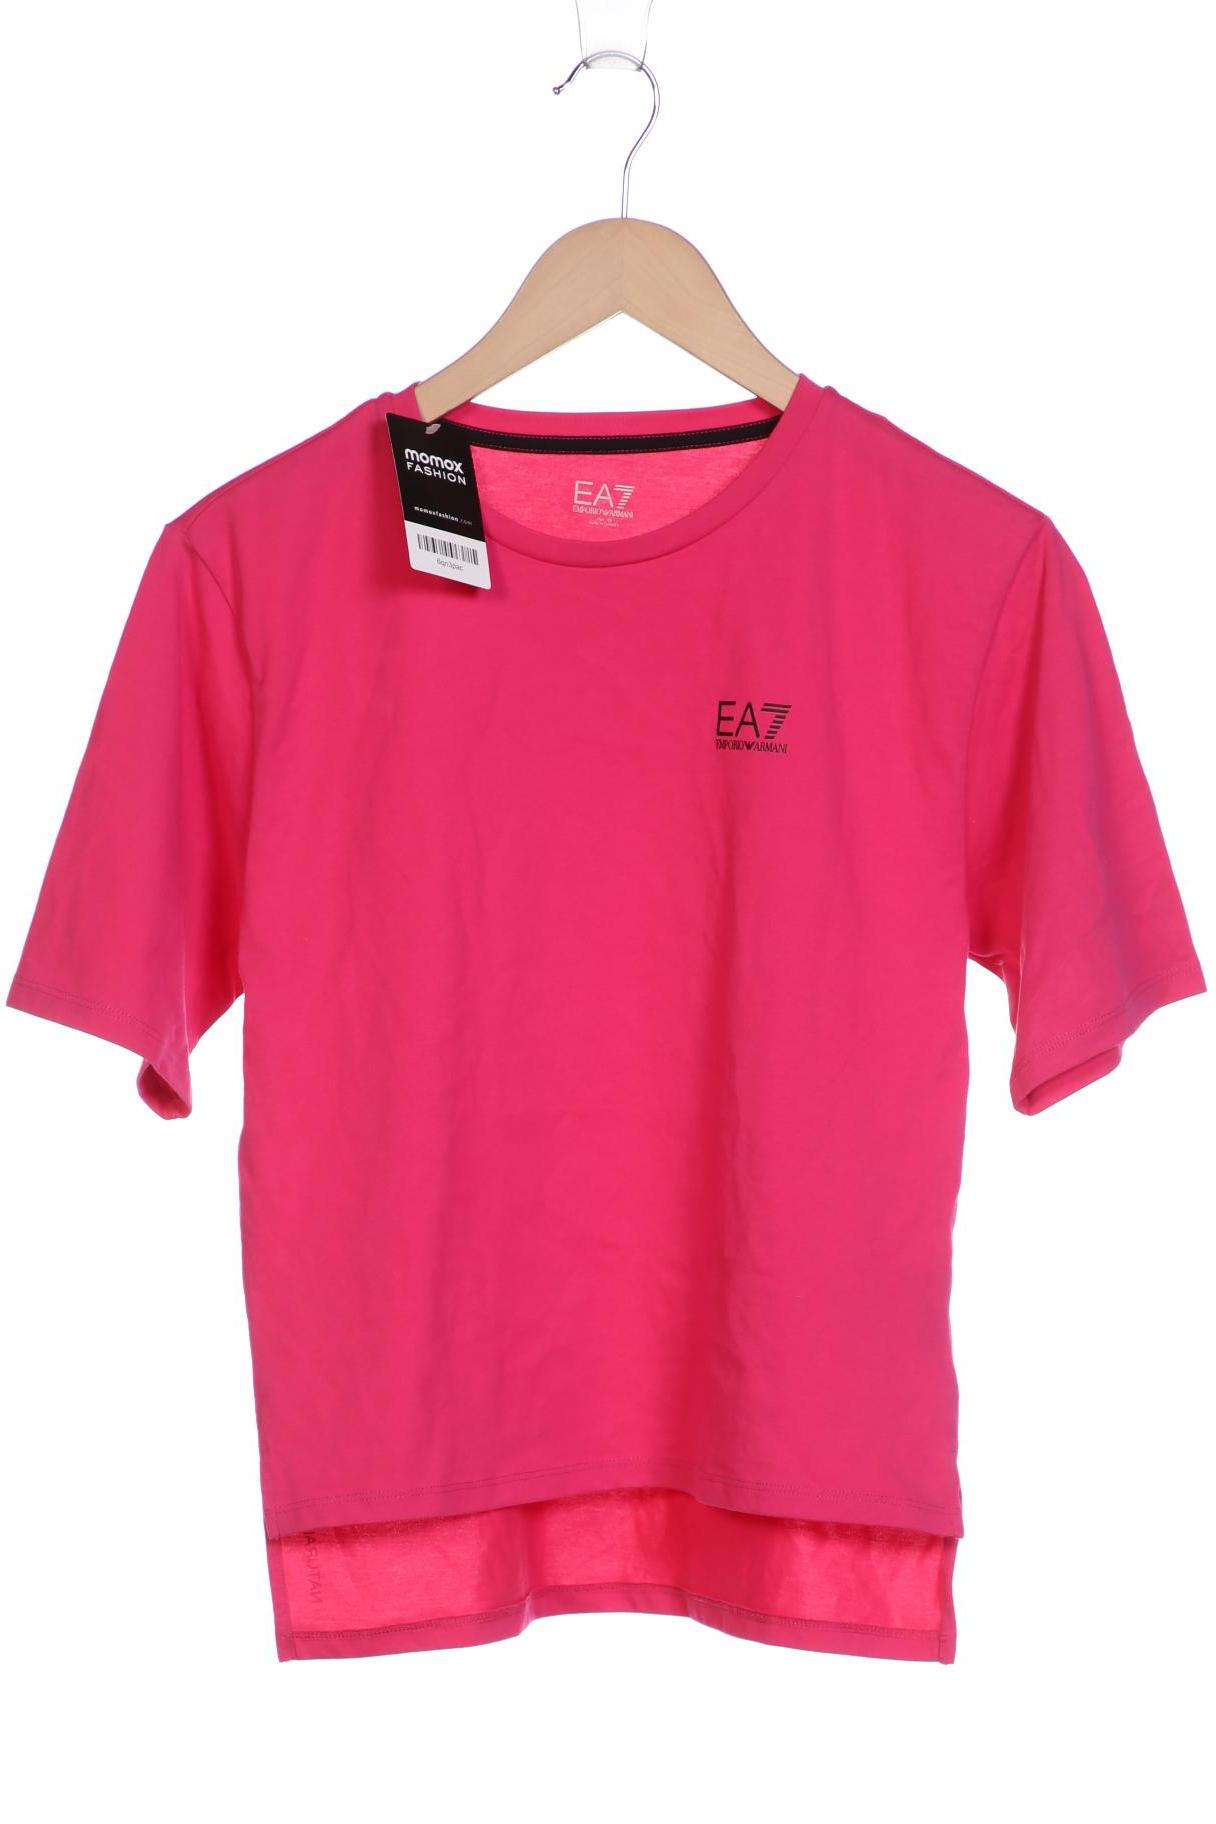 EA7 EMPORIO ARMANI Damen T-Shirt, pink von EA7 EMPORIO ARMANI